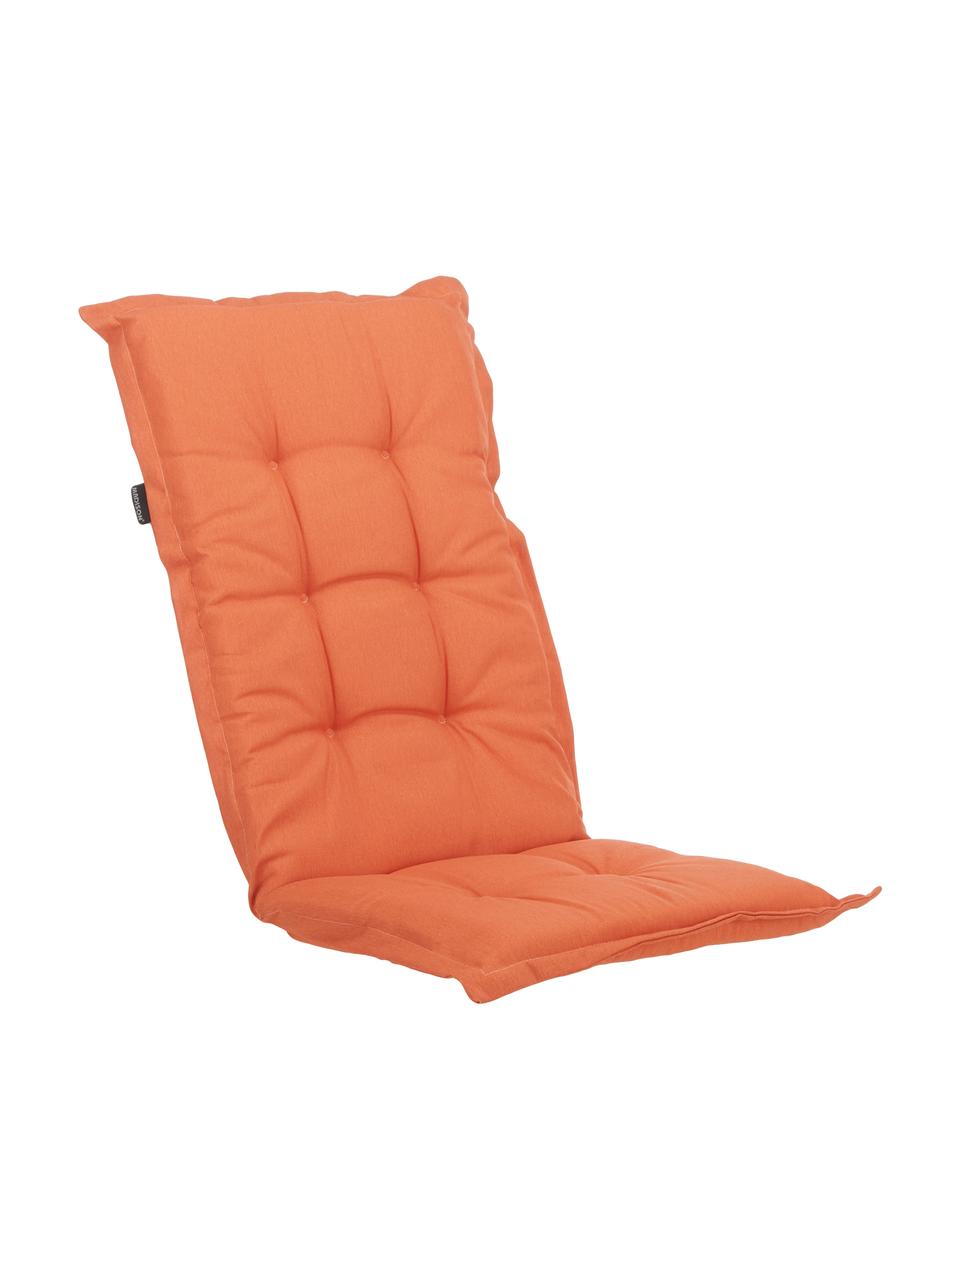 Coussin de chaise avec dossier monochrome Panama, Orange